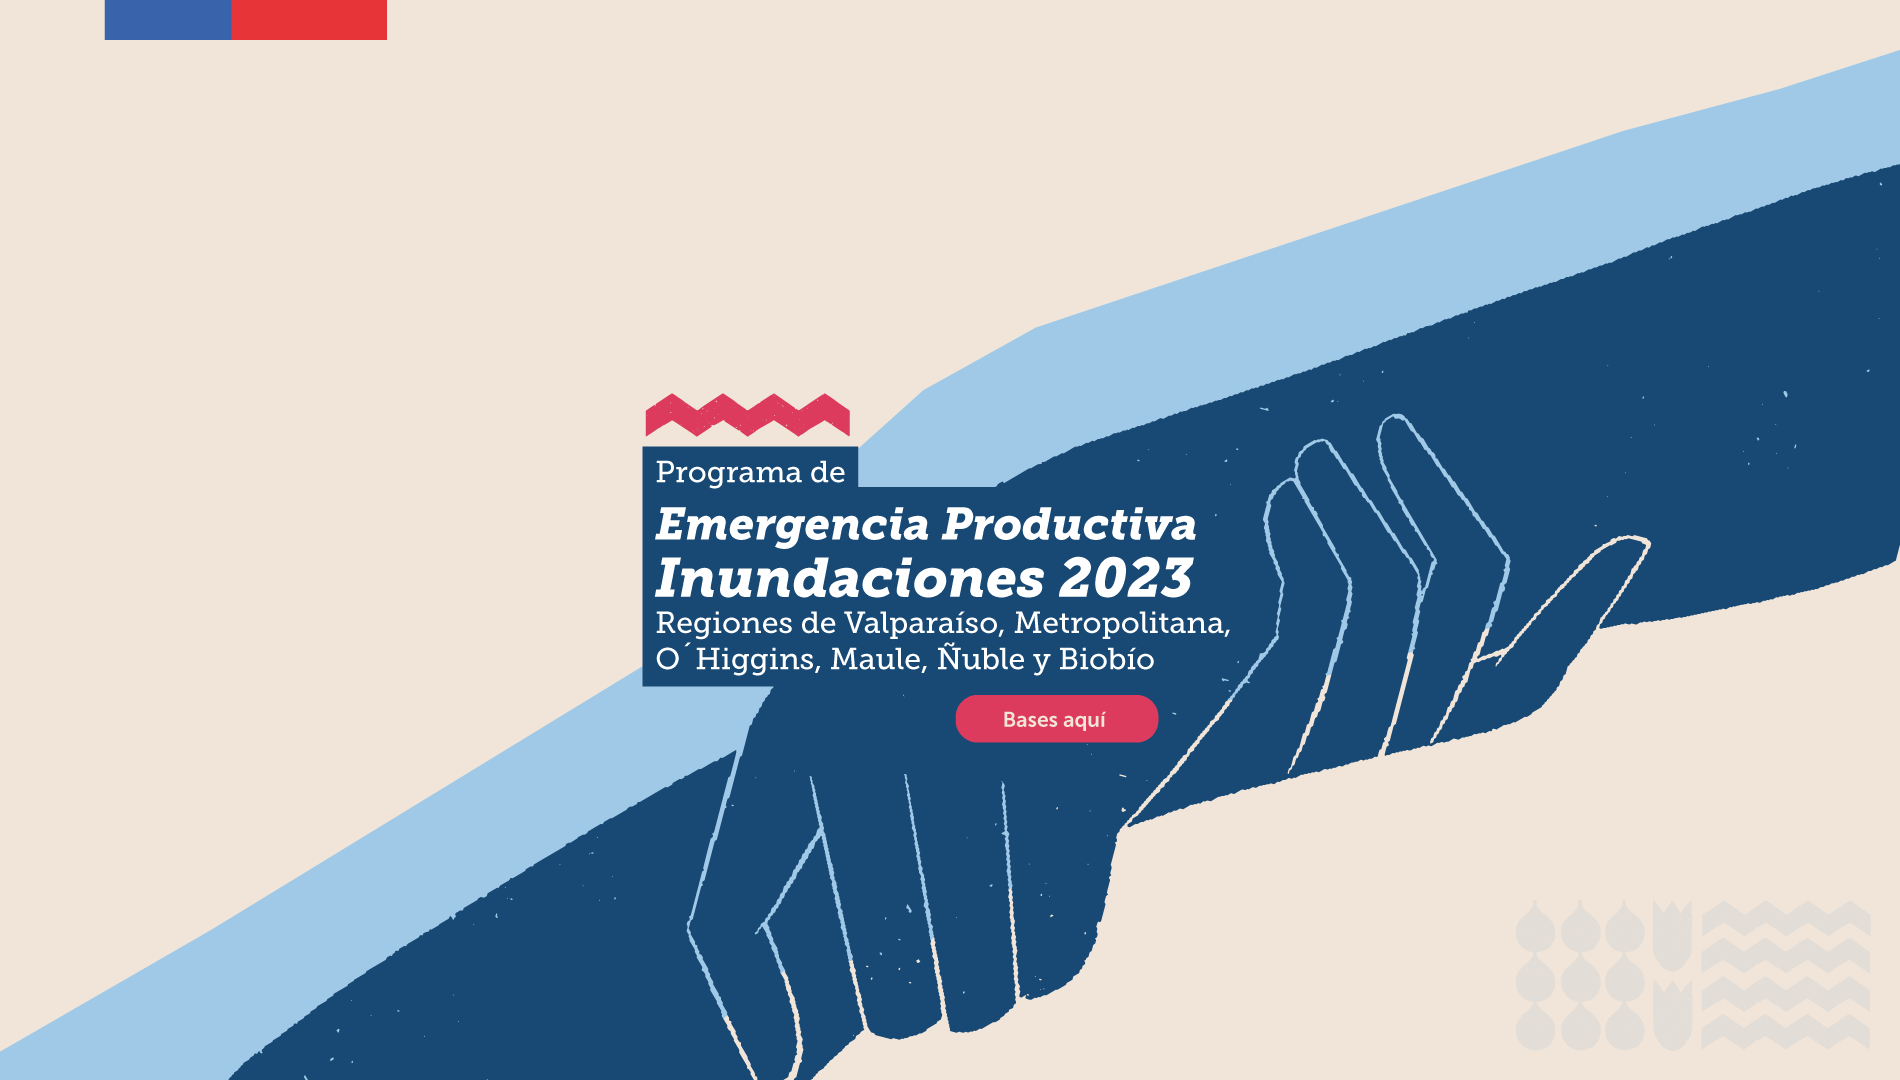 Programa Emergencia Productiva - Inundaciones 2023 - Regiones Valparaíso, Metropolitana, O’higgins, Maule, Ñuble, y Biobío.